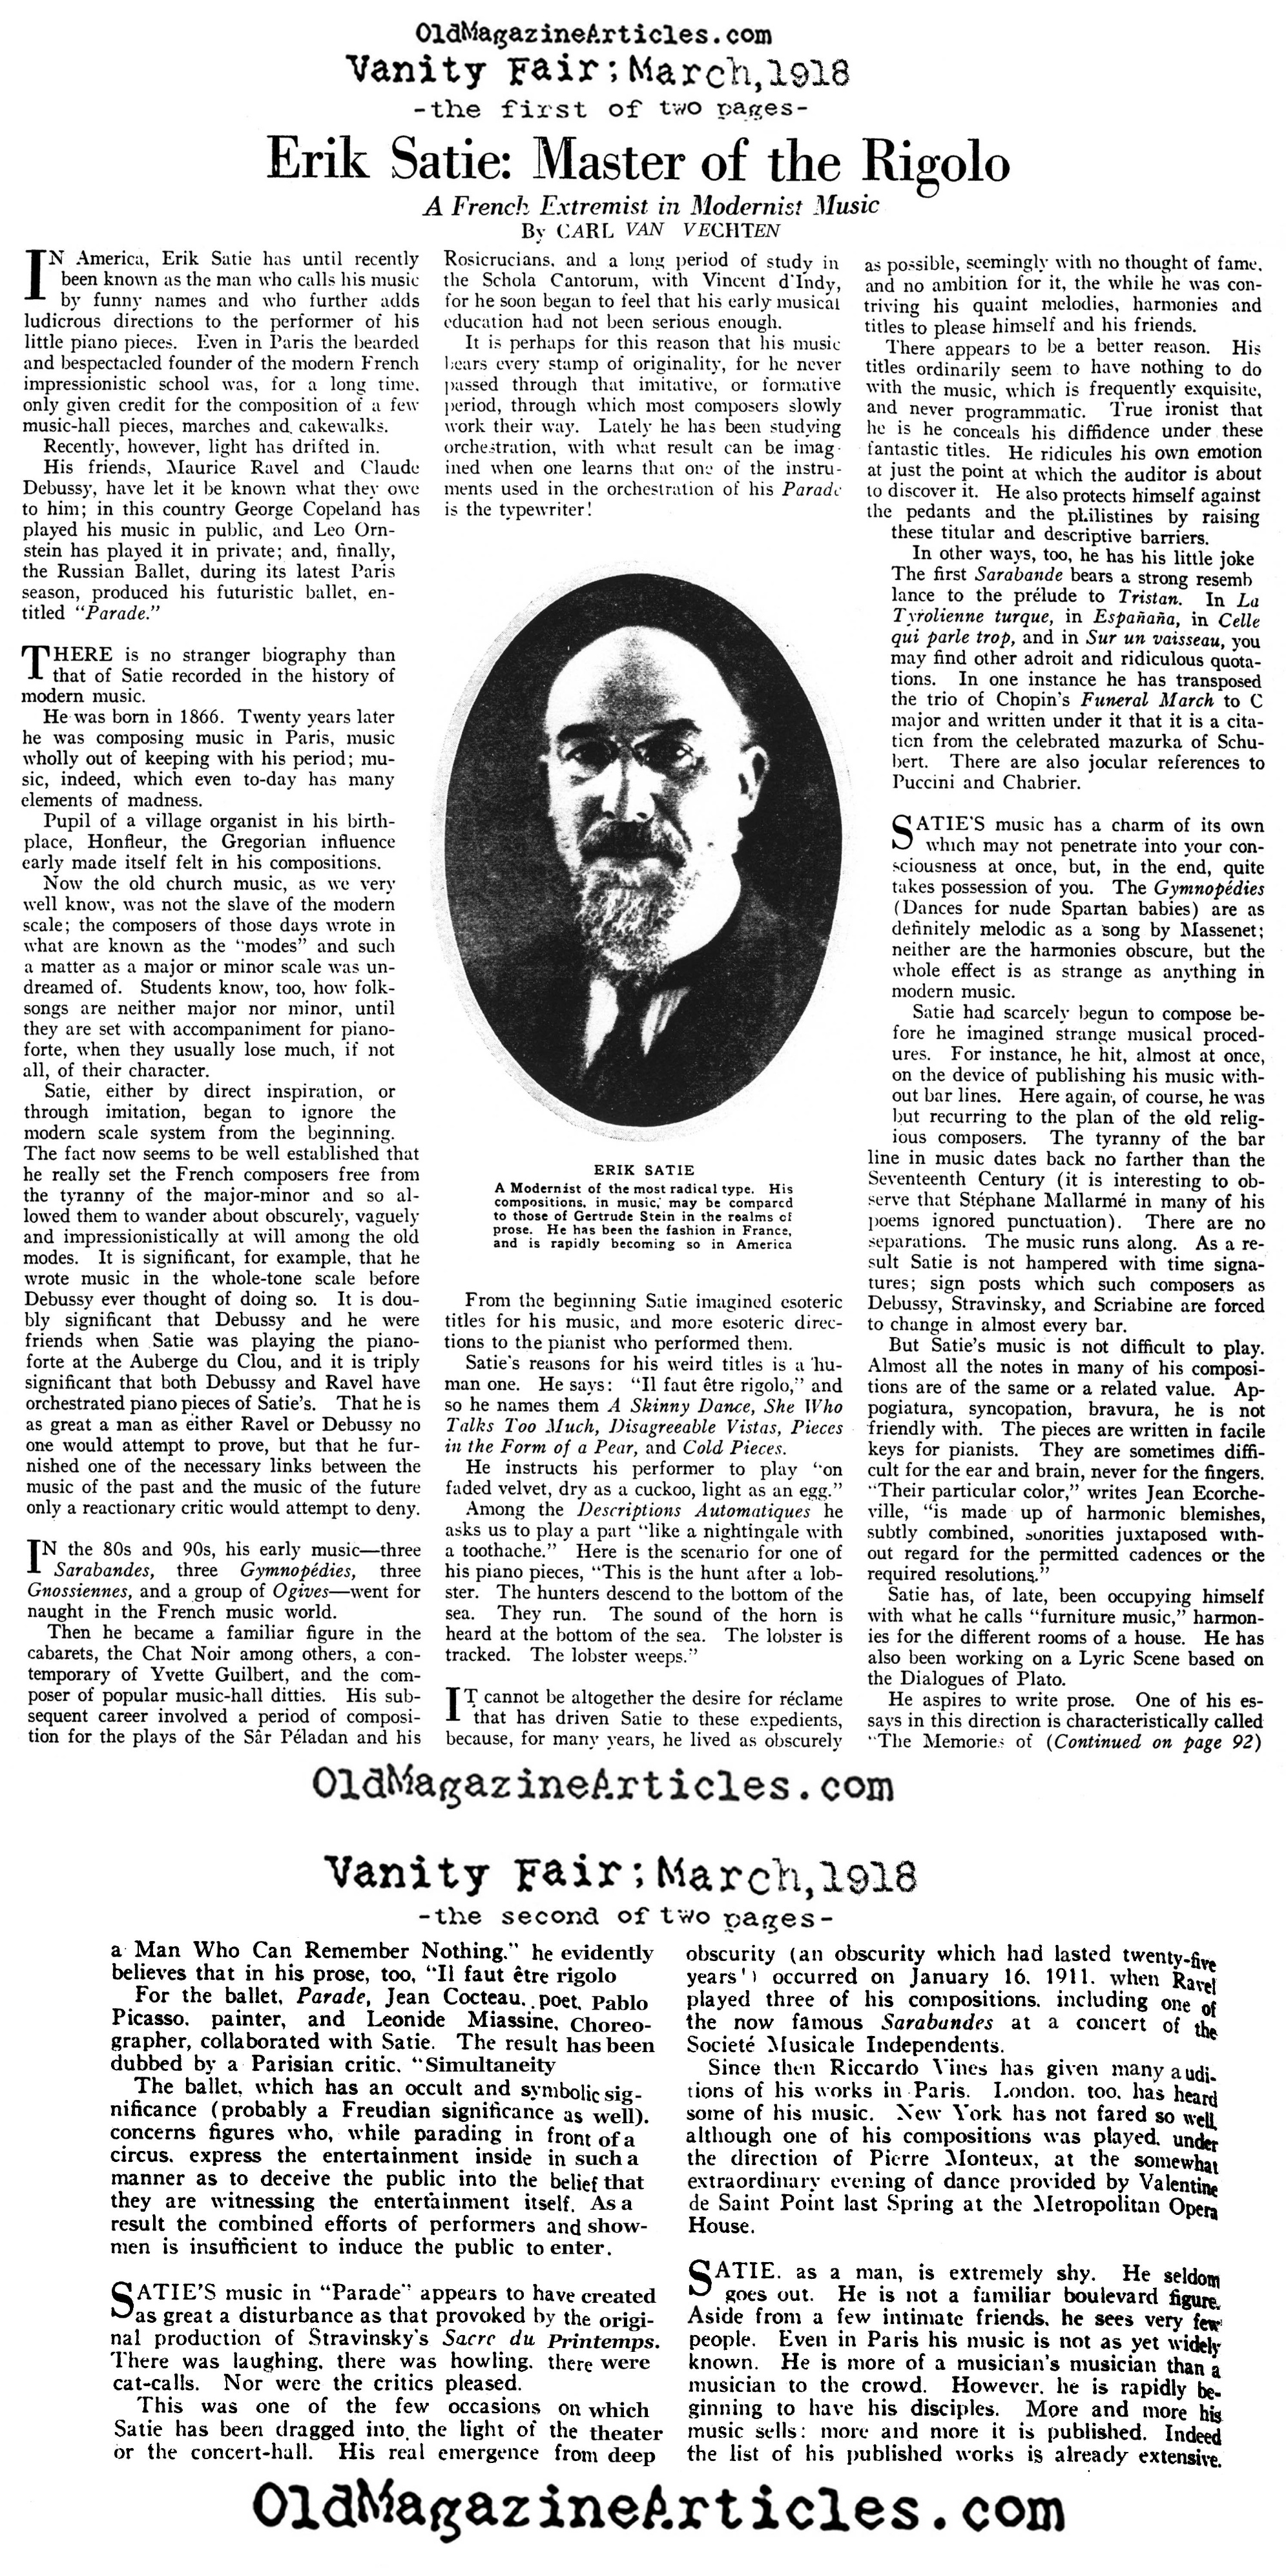 Understanding Erik Satie (Vanity Fair, 1918)